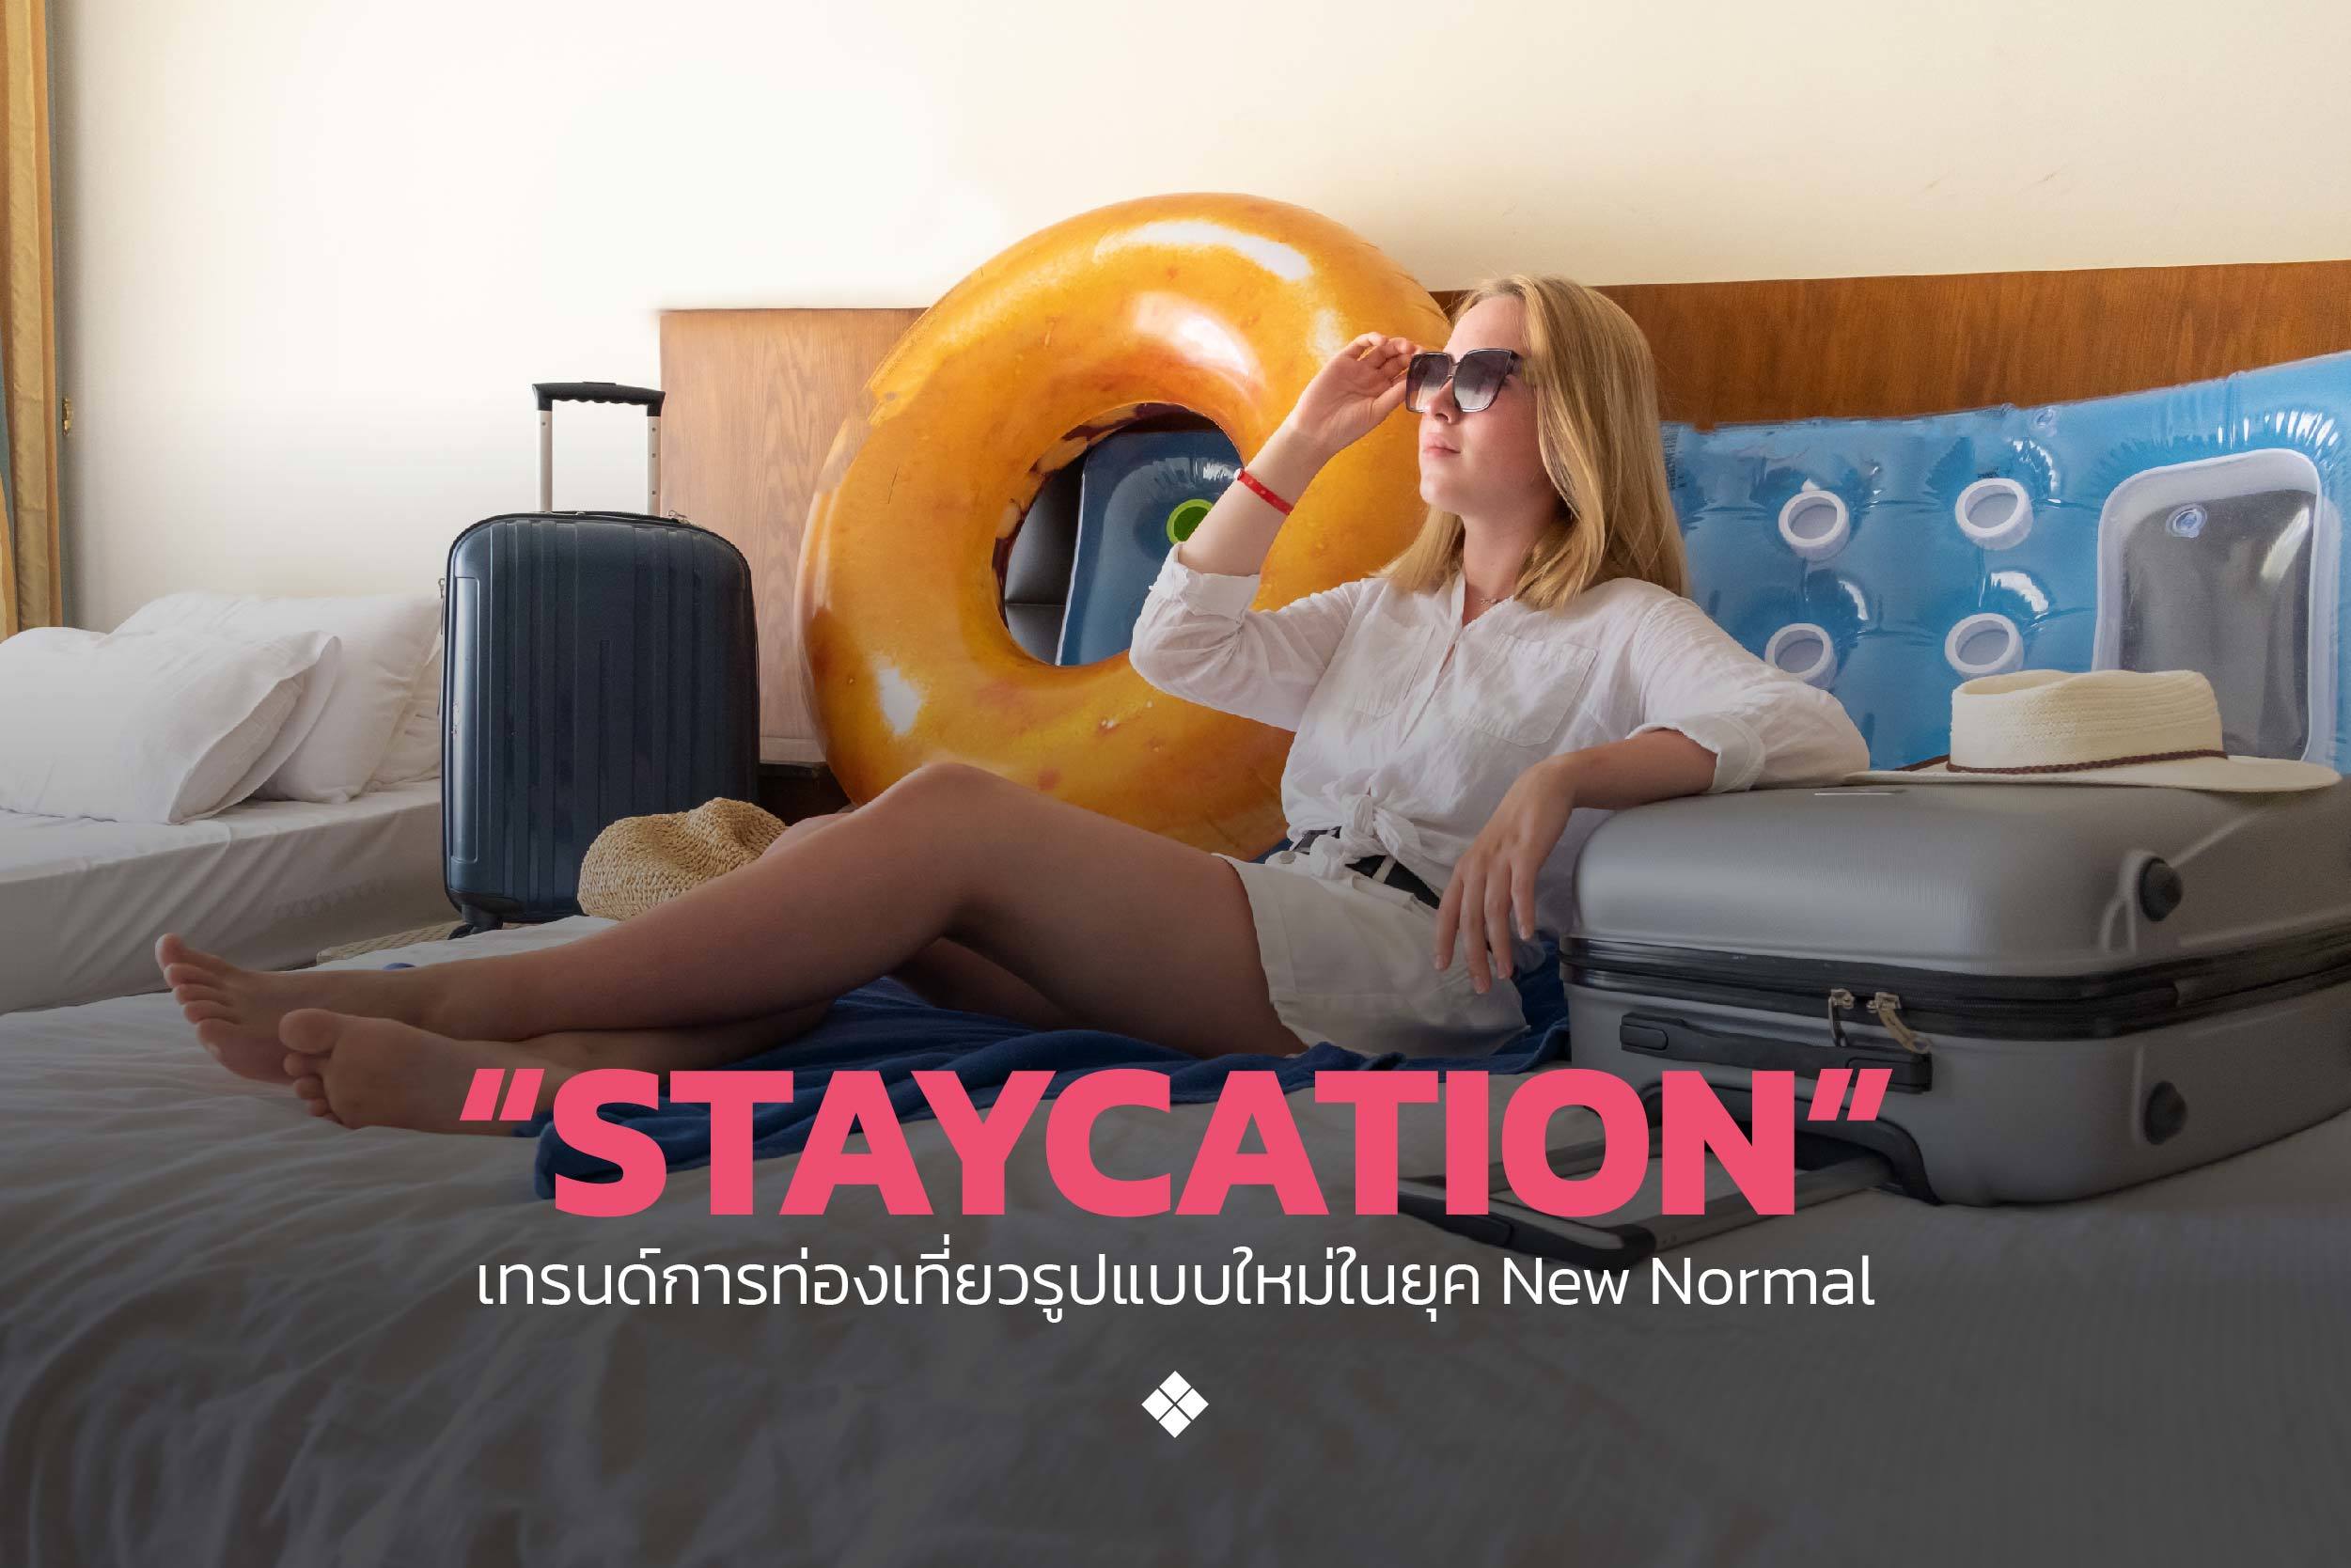 ย้อนเวลาตามหาที่มาของ Staycation เทรนด์การท่องเที่ยวรูปแบบใหม่ในยุค New Normal